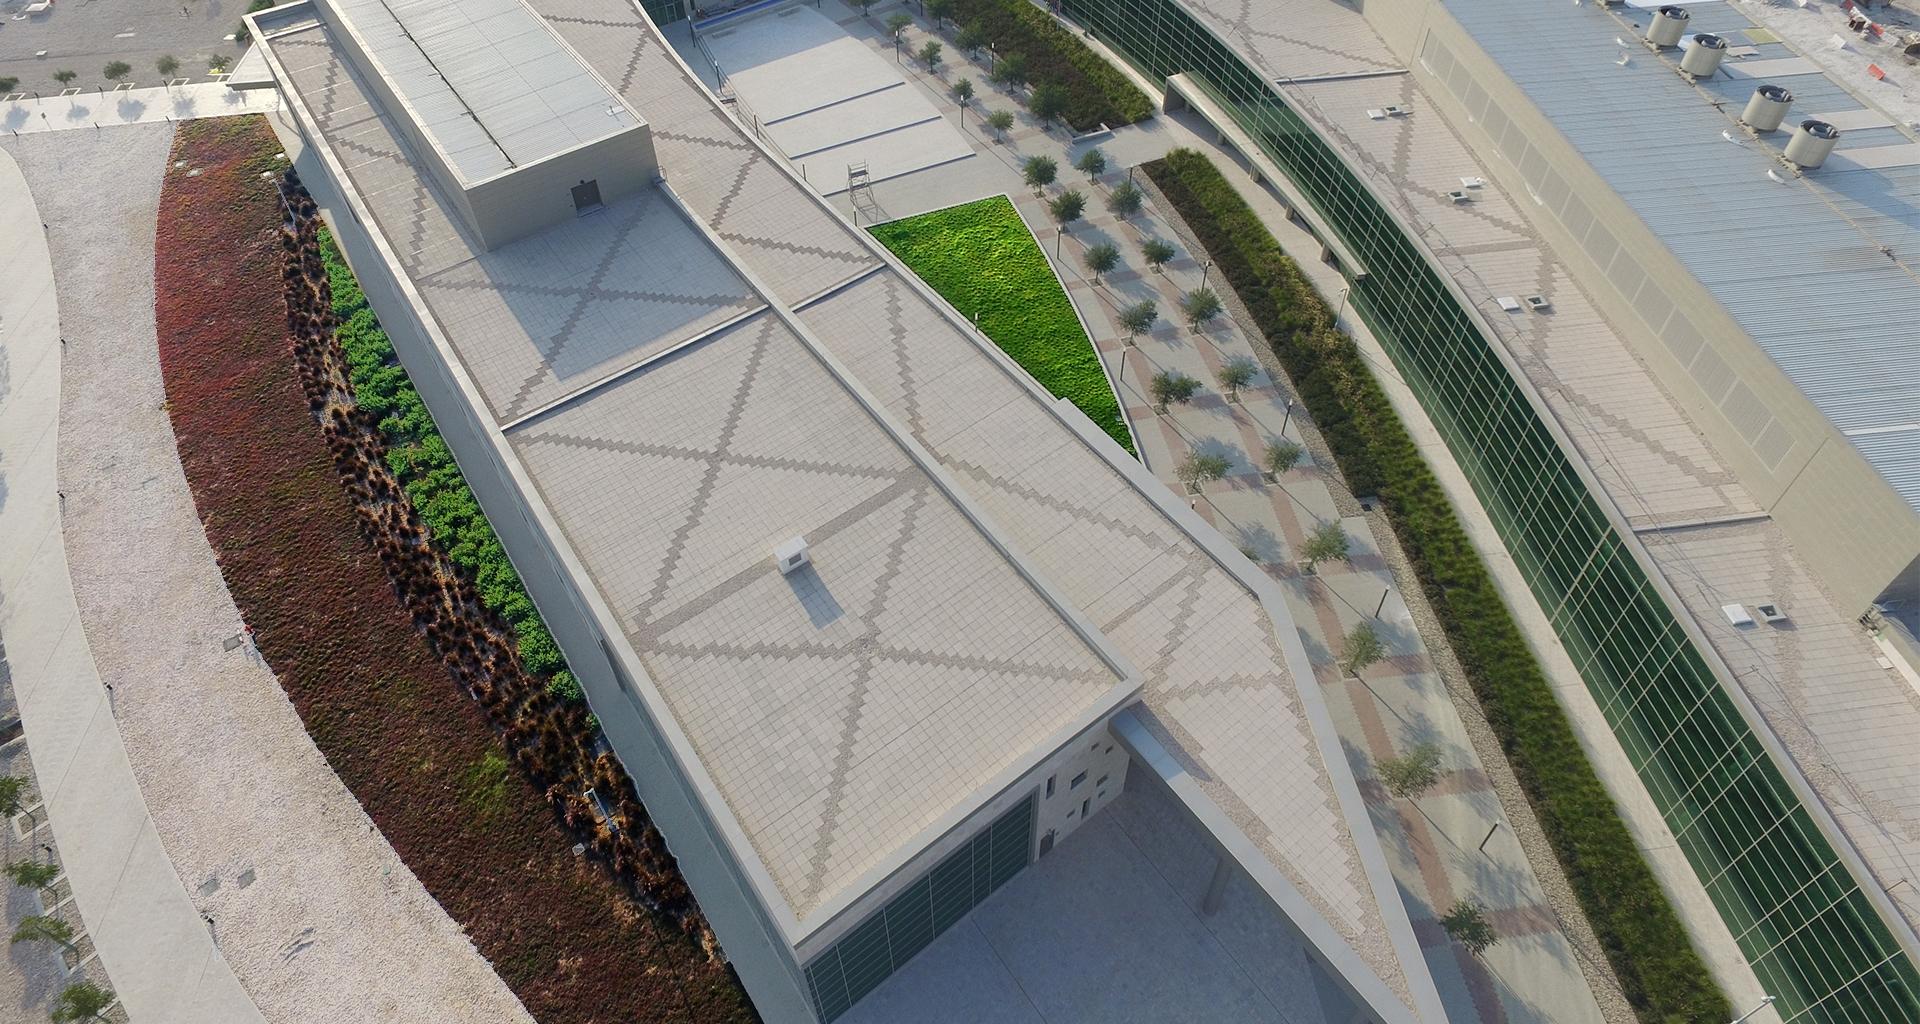 معهد قطر لبحوث البيئة والطاقة